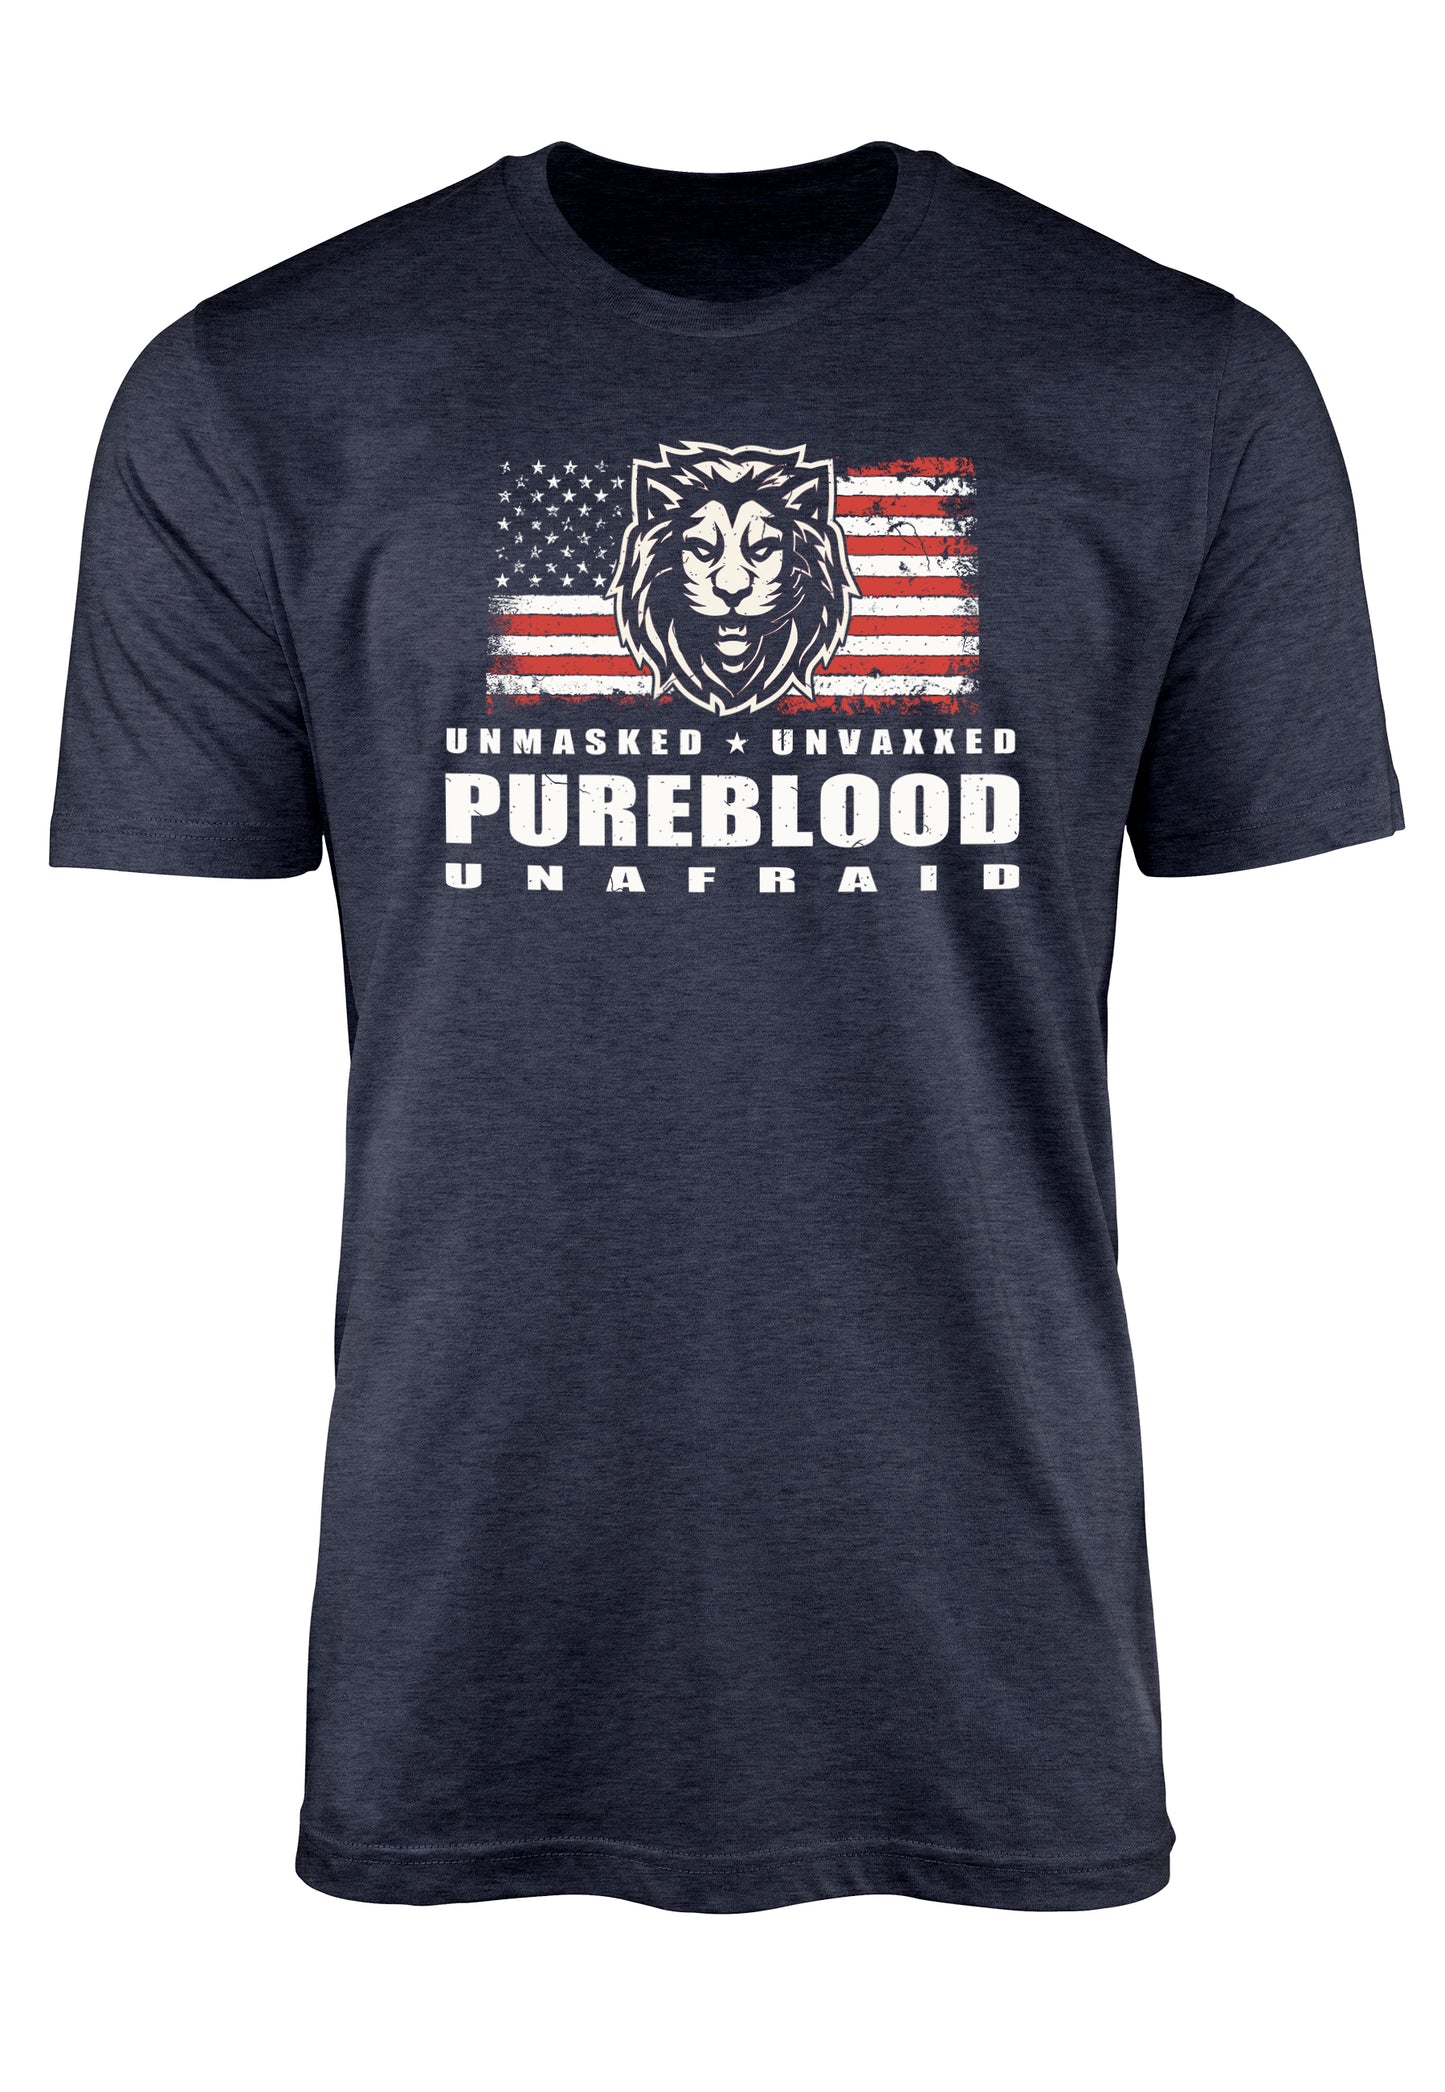 Pureblood t-shirt anti vaccine t-shirt from Teeslanger